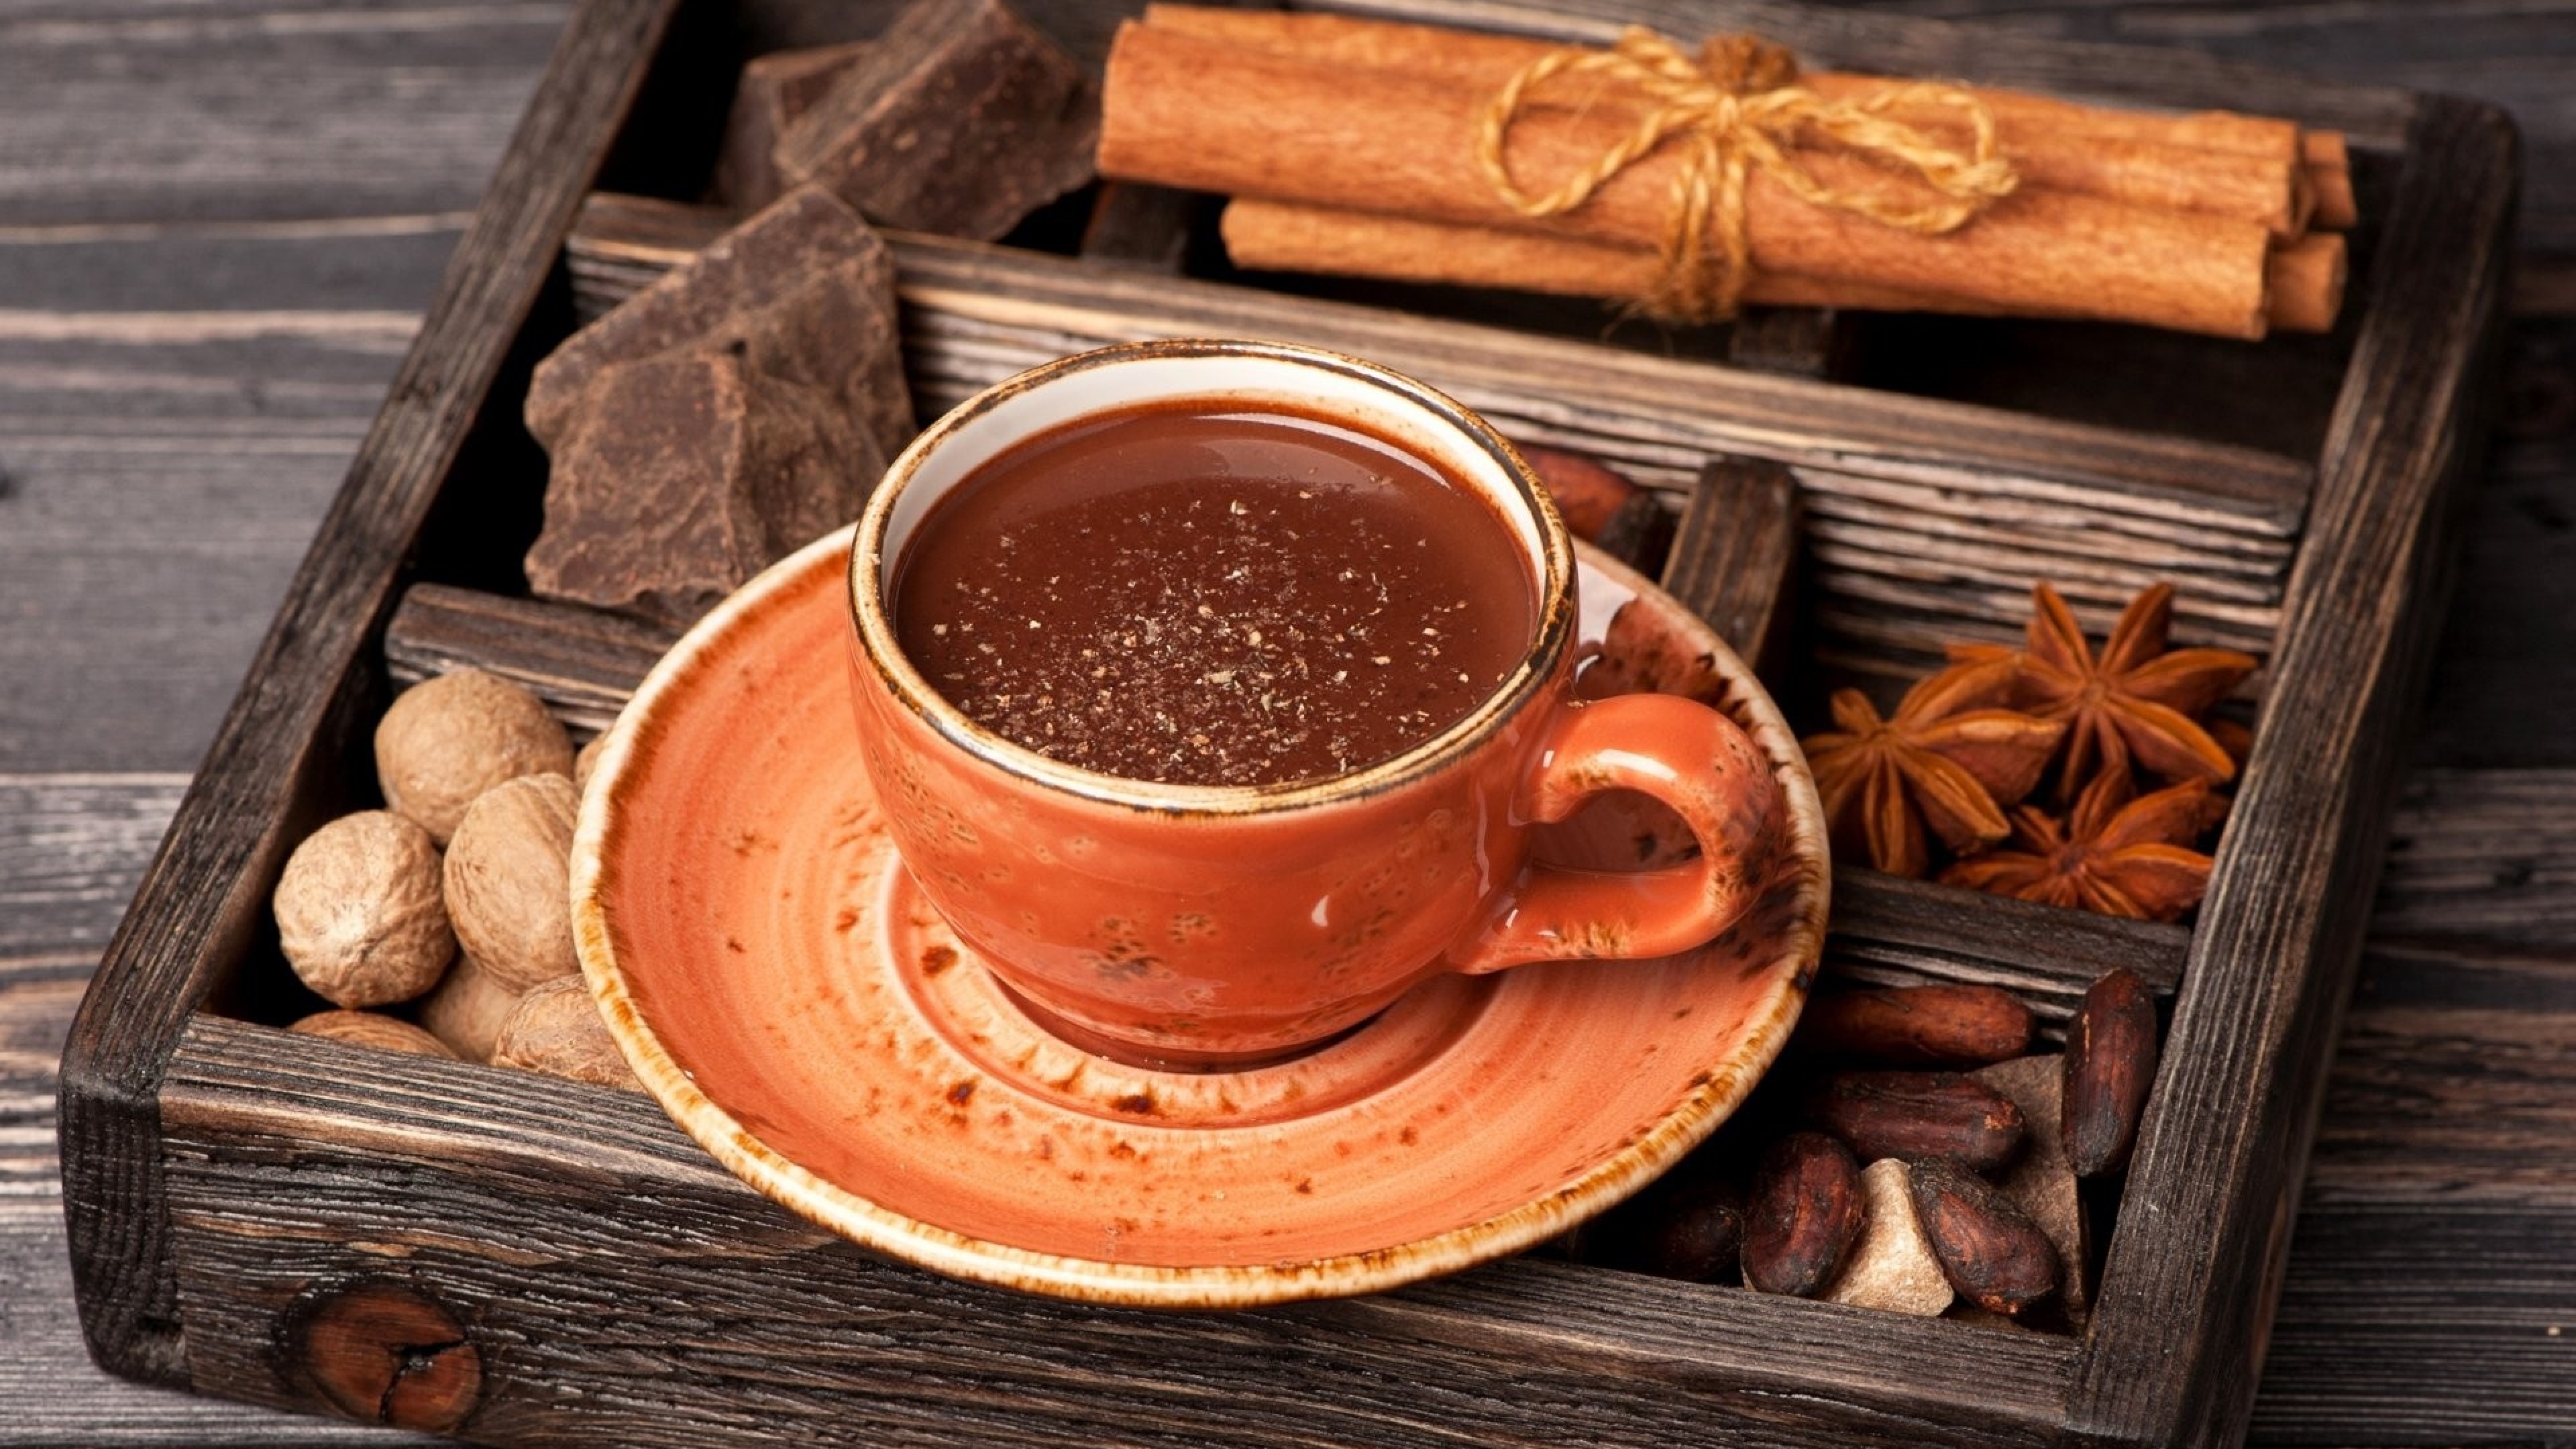 Чай и плитка шоколада. Кофе и шоколад. Чай с шоколадом. Чашка кофе. Горячий шоколад.